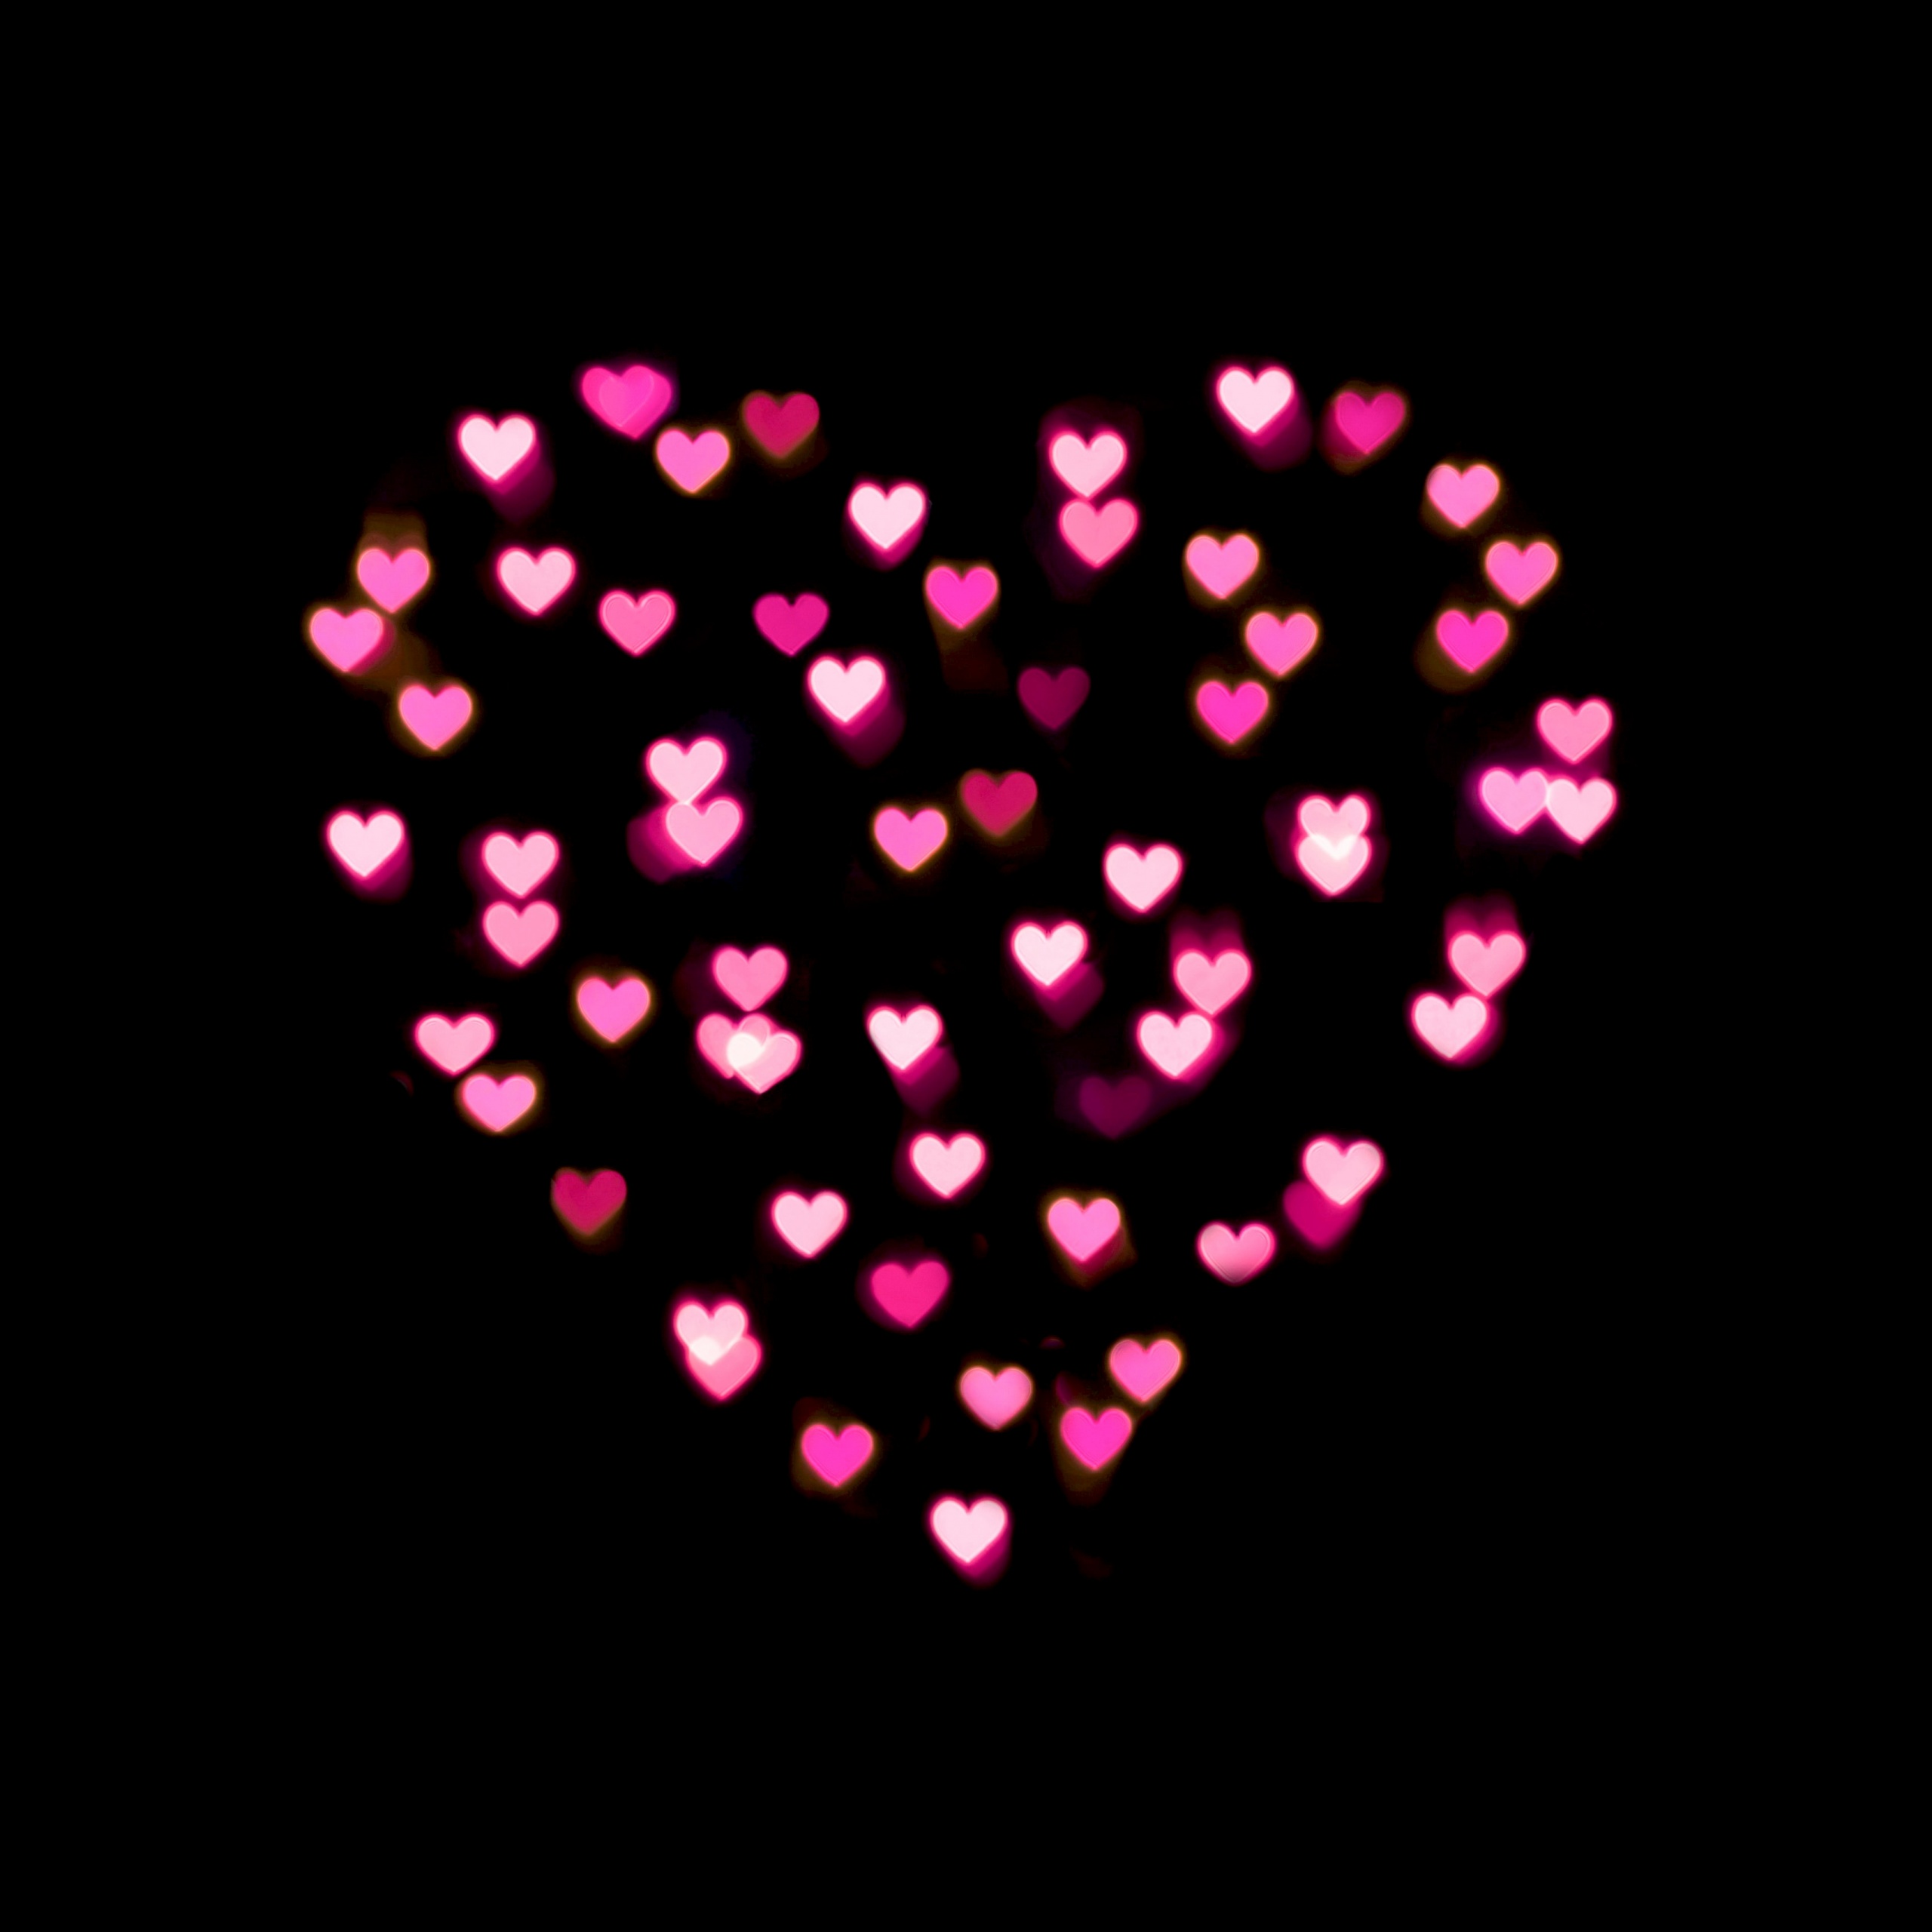 Love Heart Wallpaper 4K, Pink Hearts, Lights, Black Dark